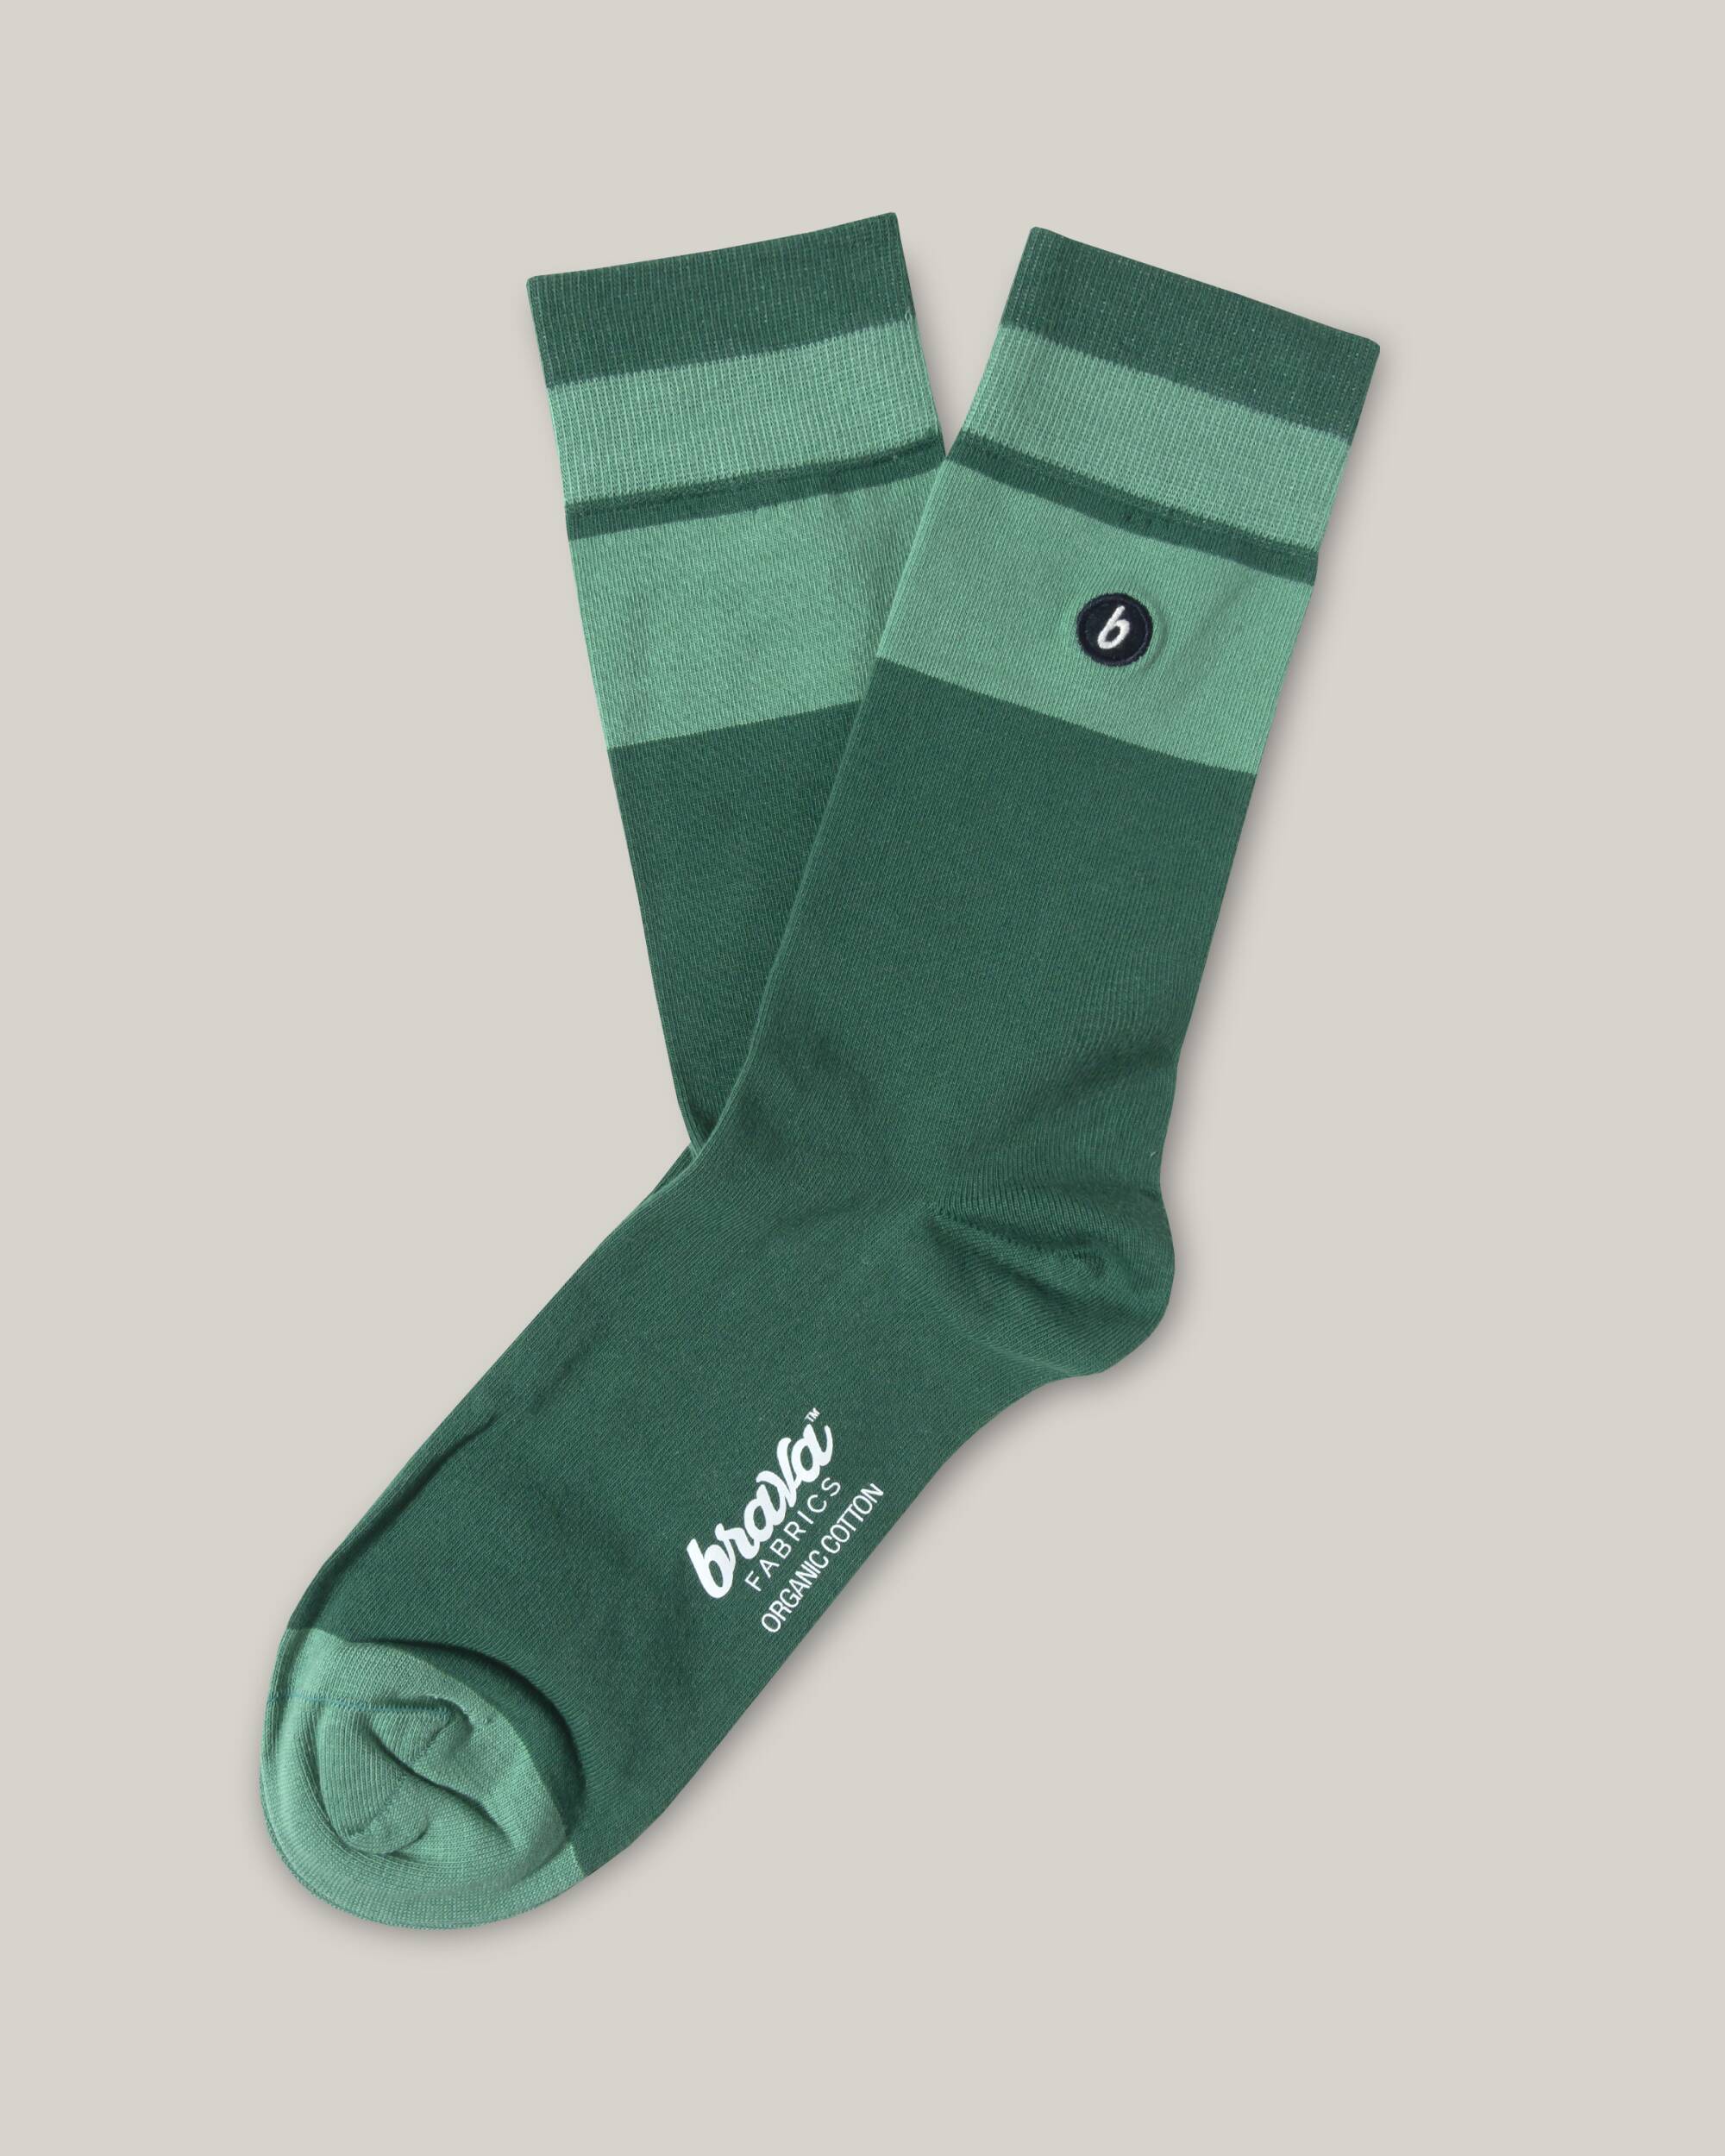 Socken in grün mit türkis aus 100% Bio - Baumwolle von Brava Fabrics